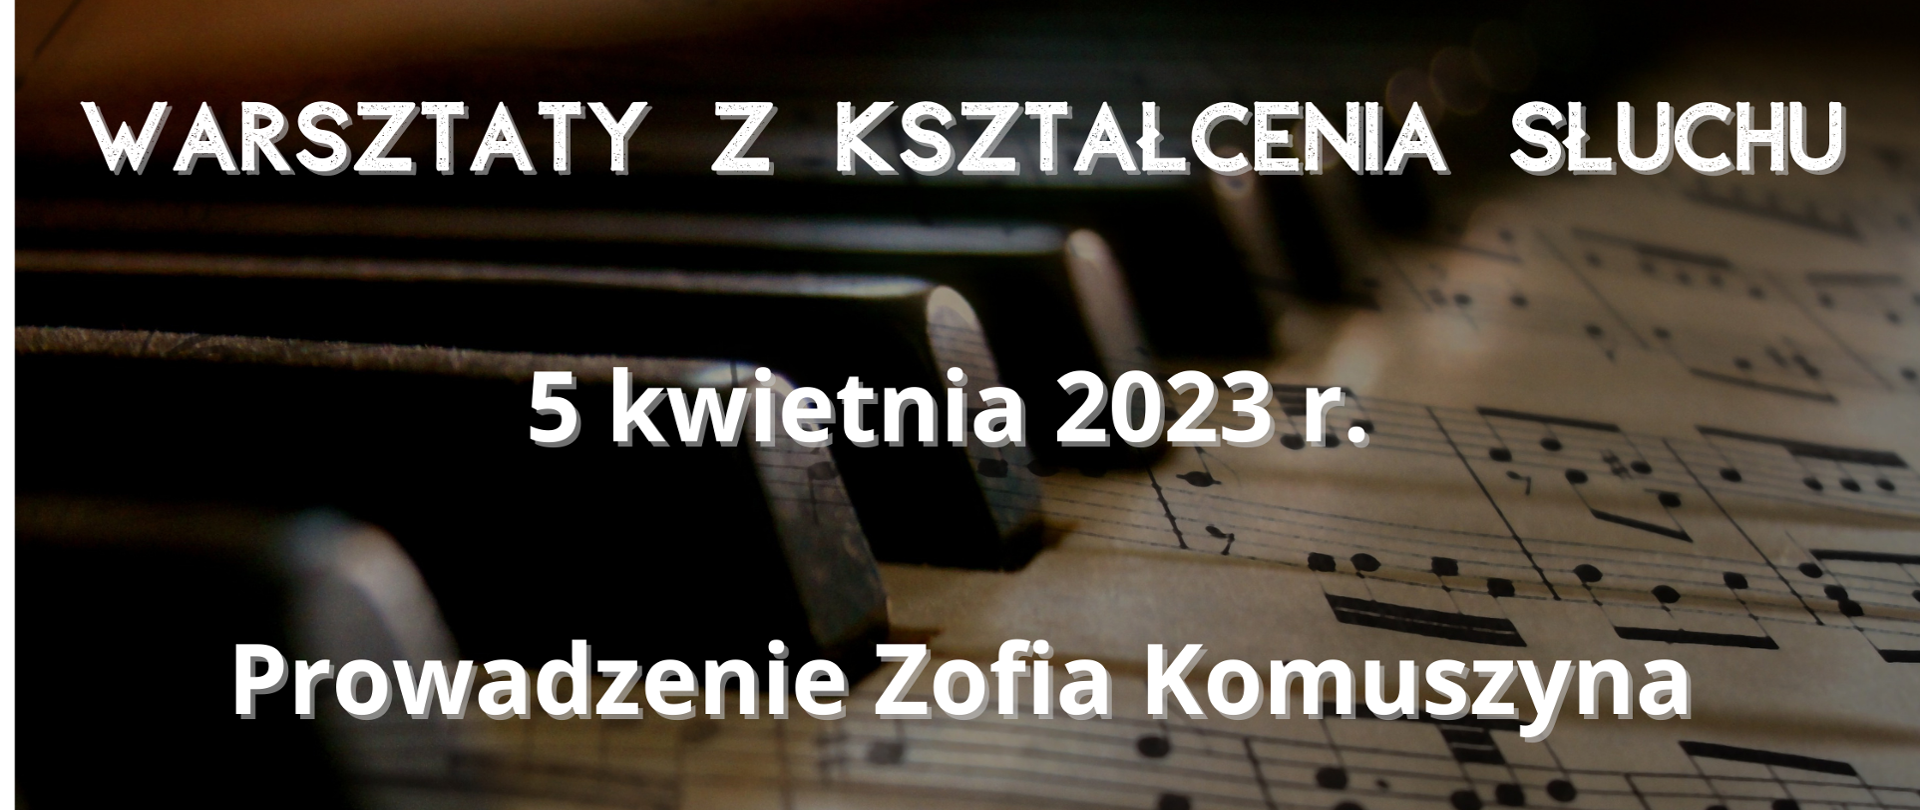 Plakat przedstawia z lewej strony klawiaturę fortepianu, z prawej kartkę z nutami oraz wpis: Warsztaty z kształcenia słuchu 5 kwietnia 2023 r. prowadzenie Zofia Komuszyna.